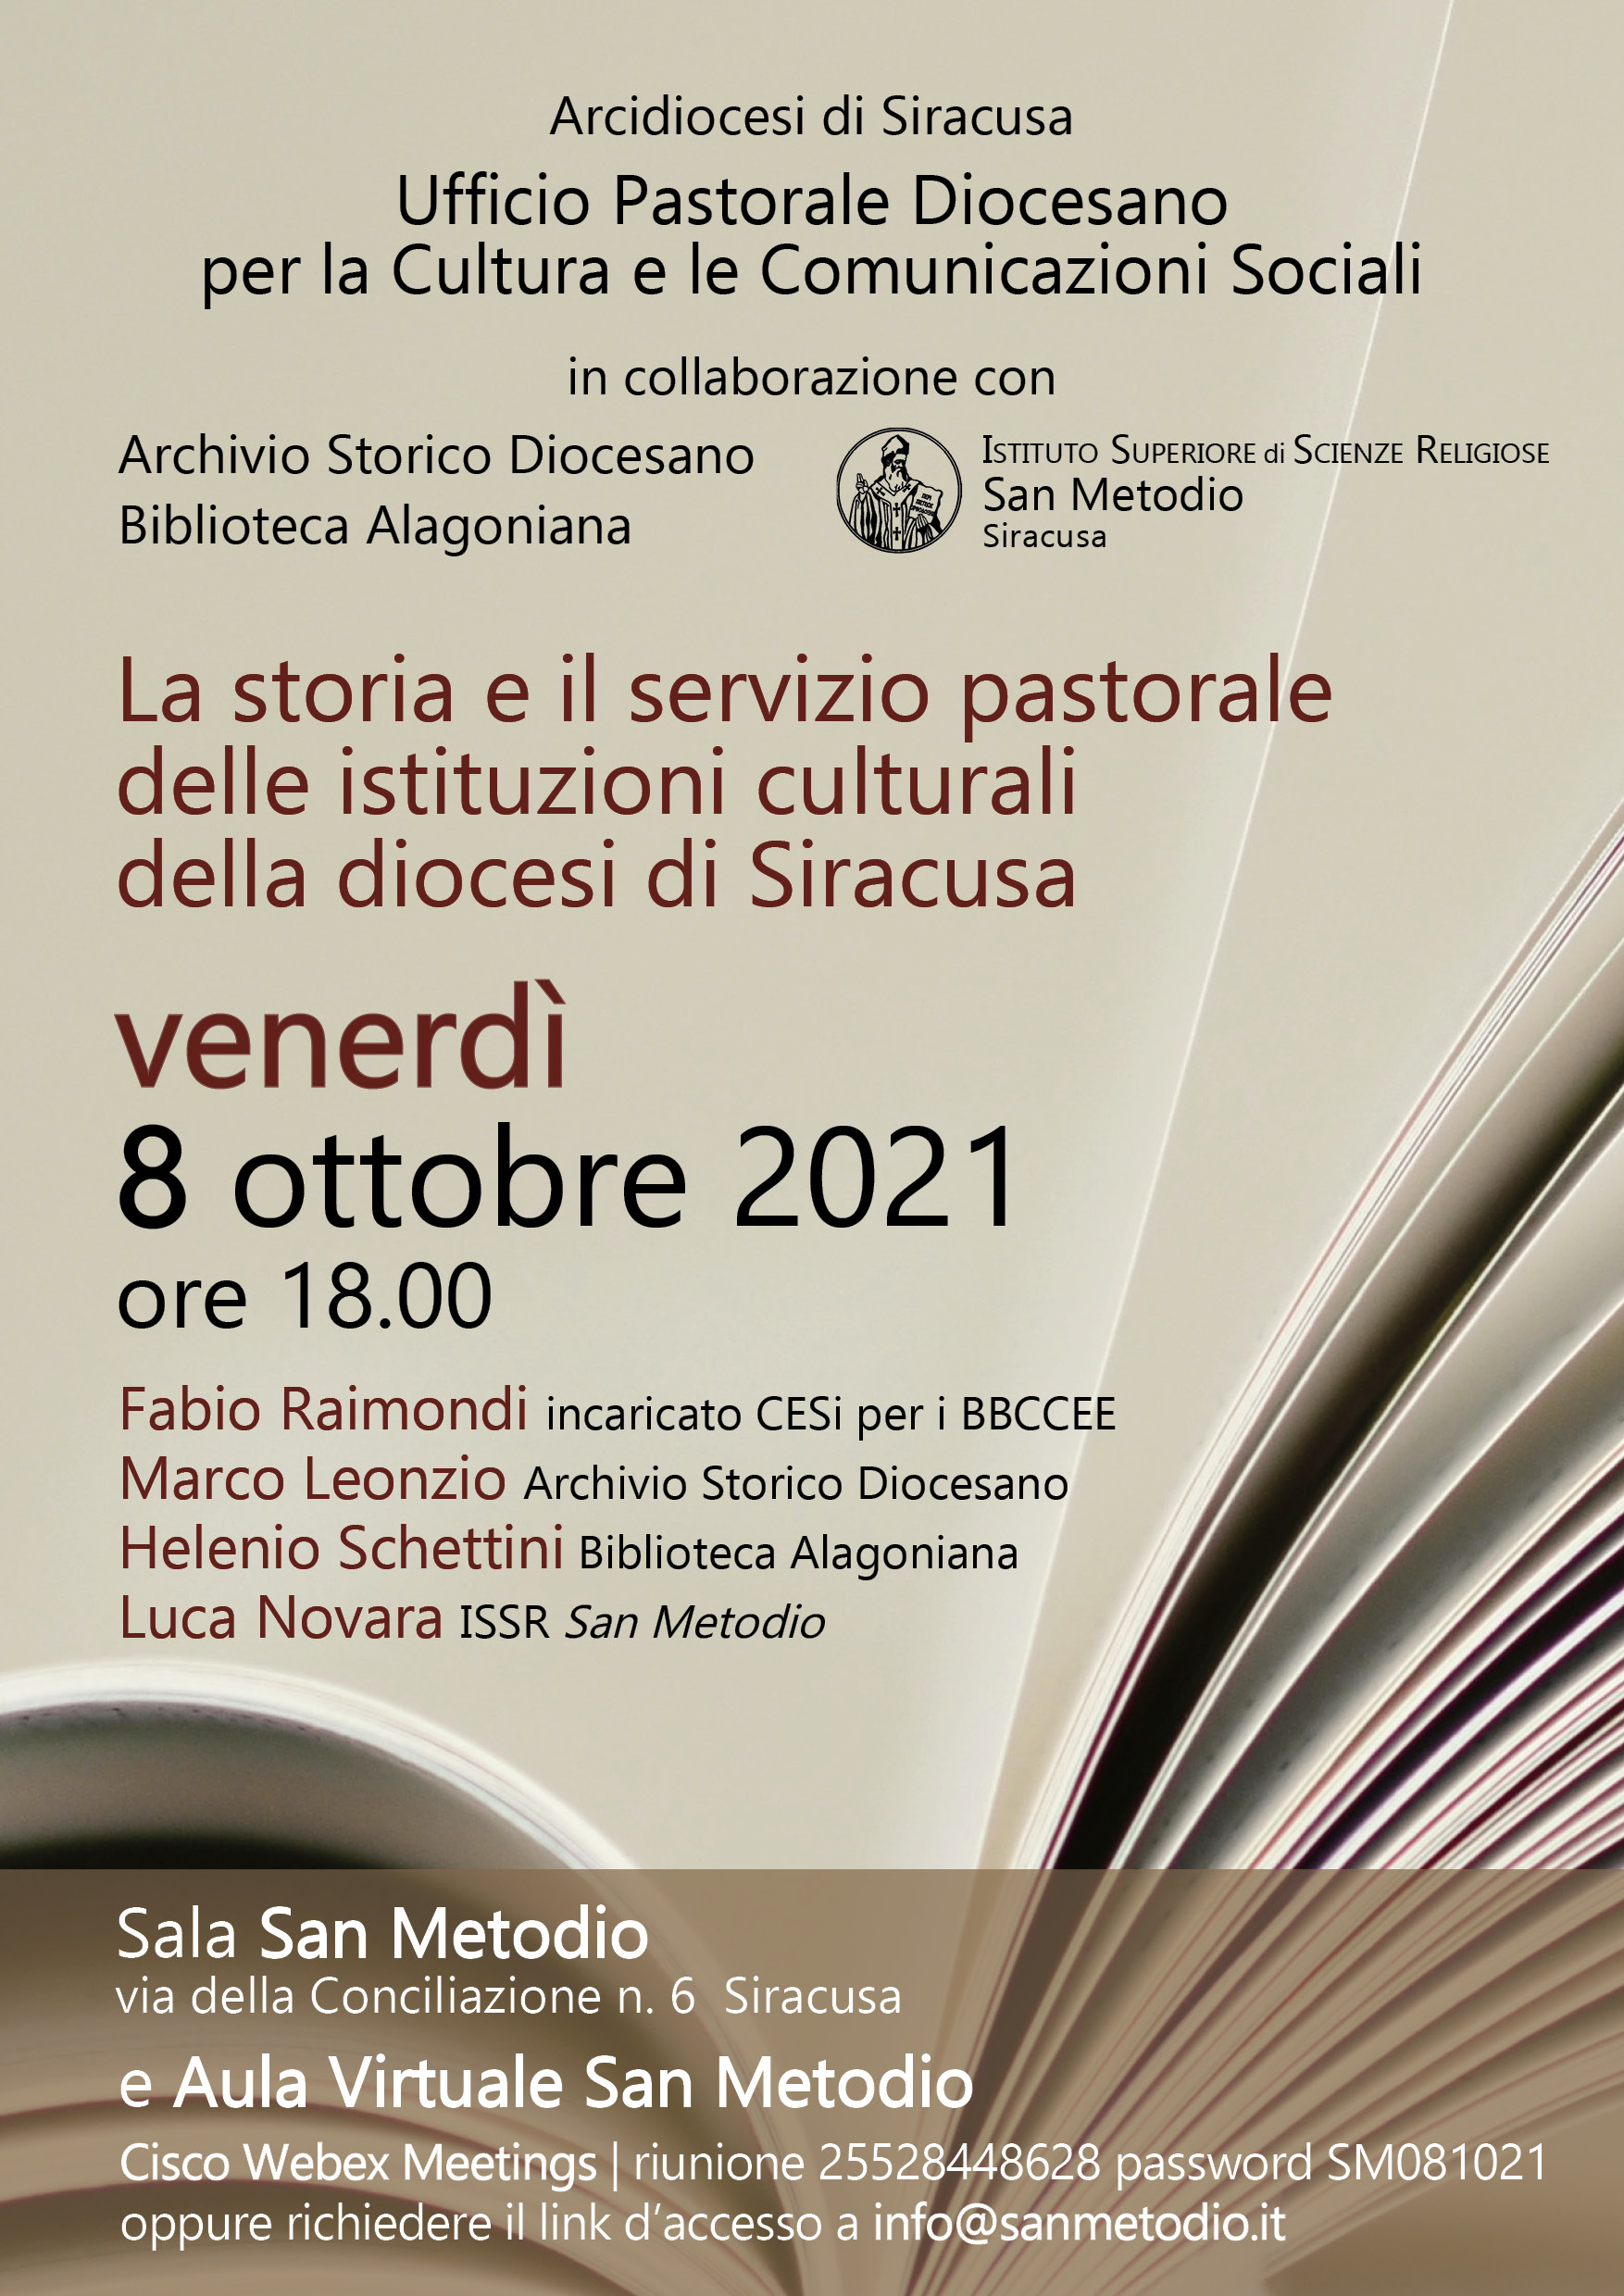 invito_Arcidiocesi_di_Siracusa_Ufficio_Cultura_08.10.2021.jpg